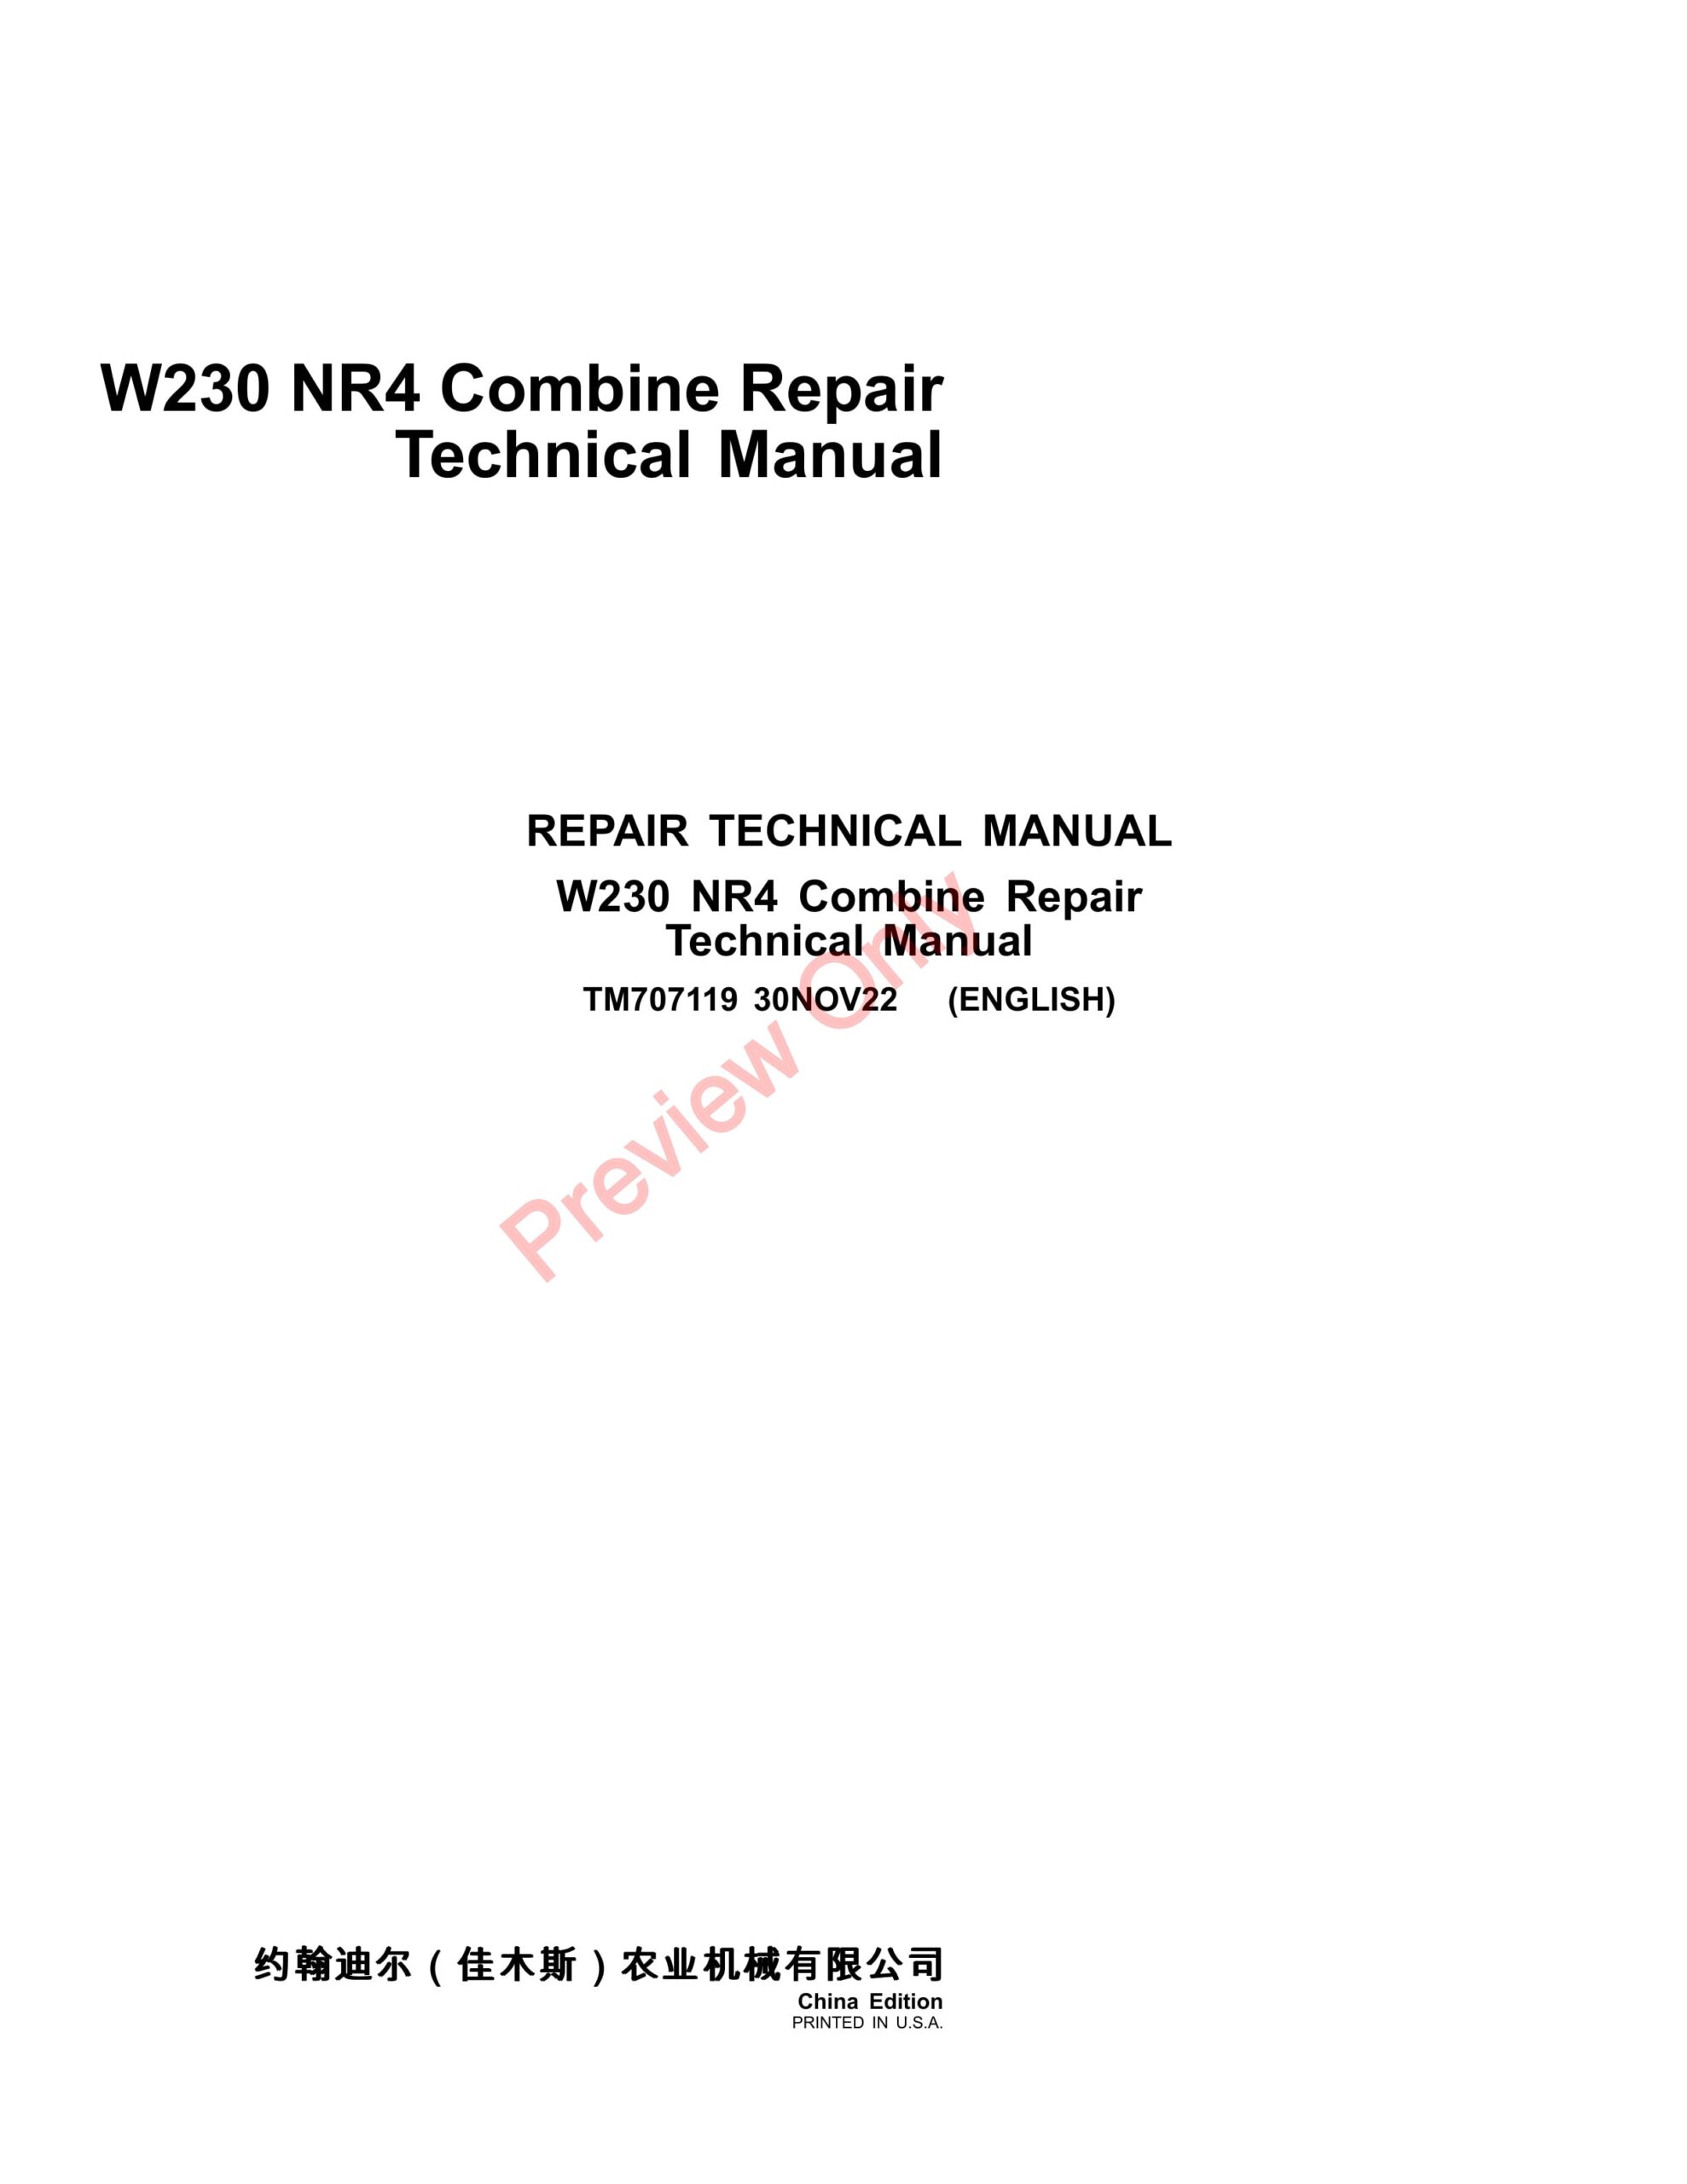 John Deere W230 NR4 Combine Repair Technical Manual TM707119 30NOV22-1